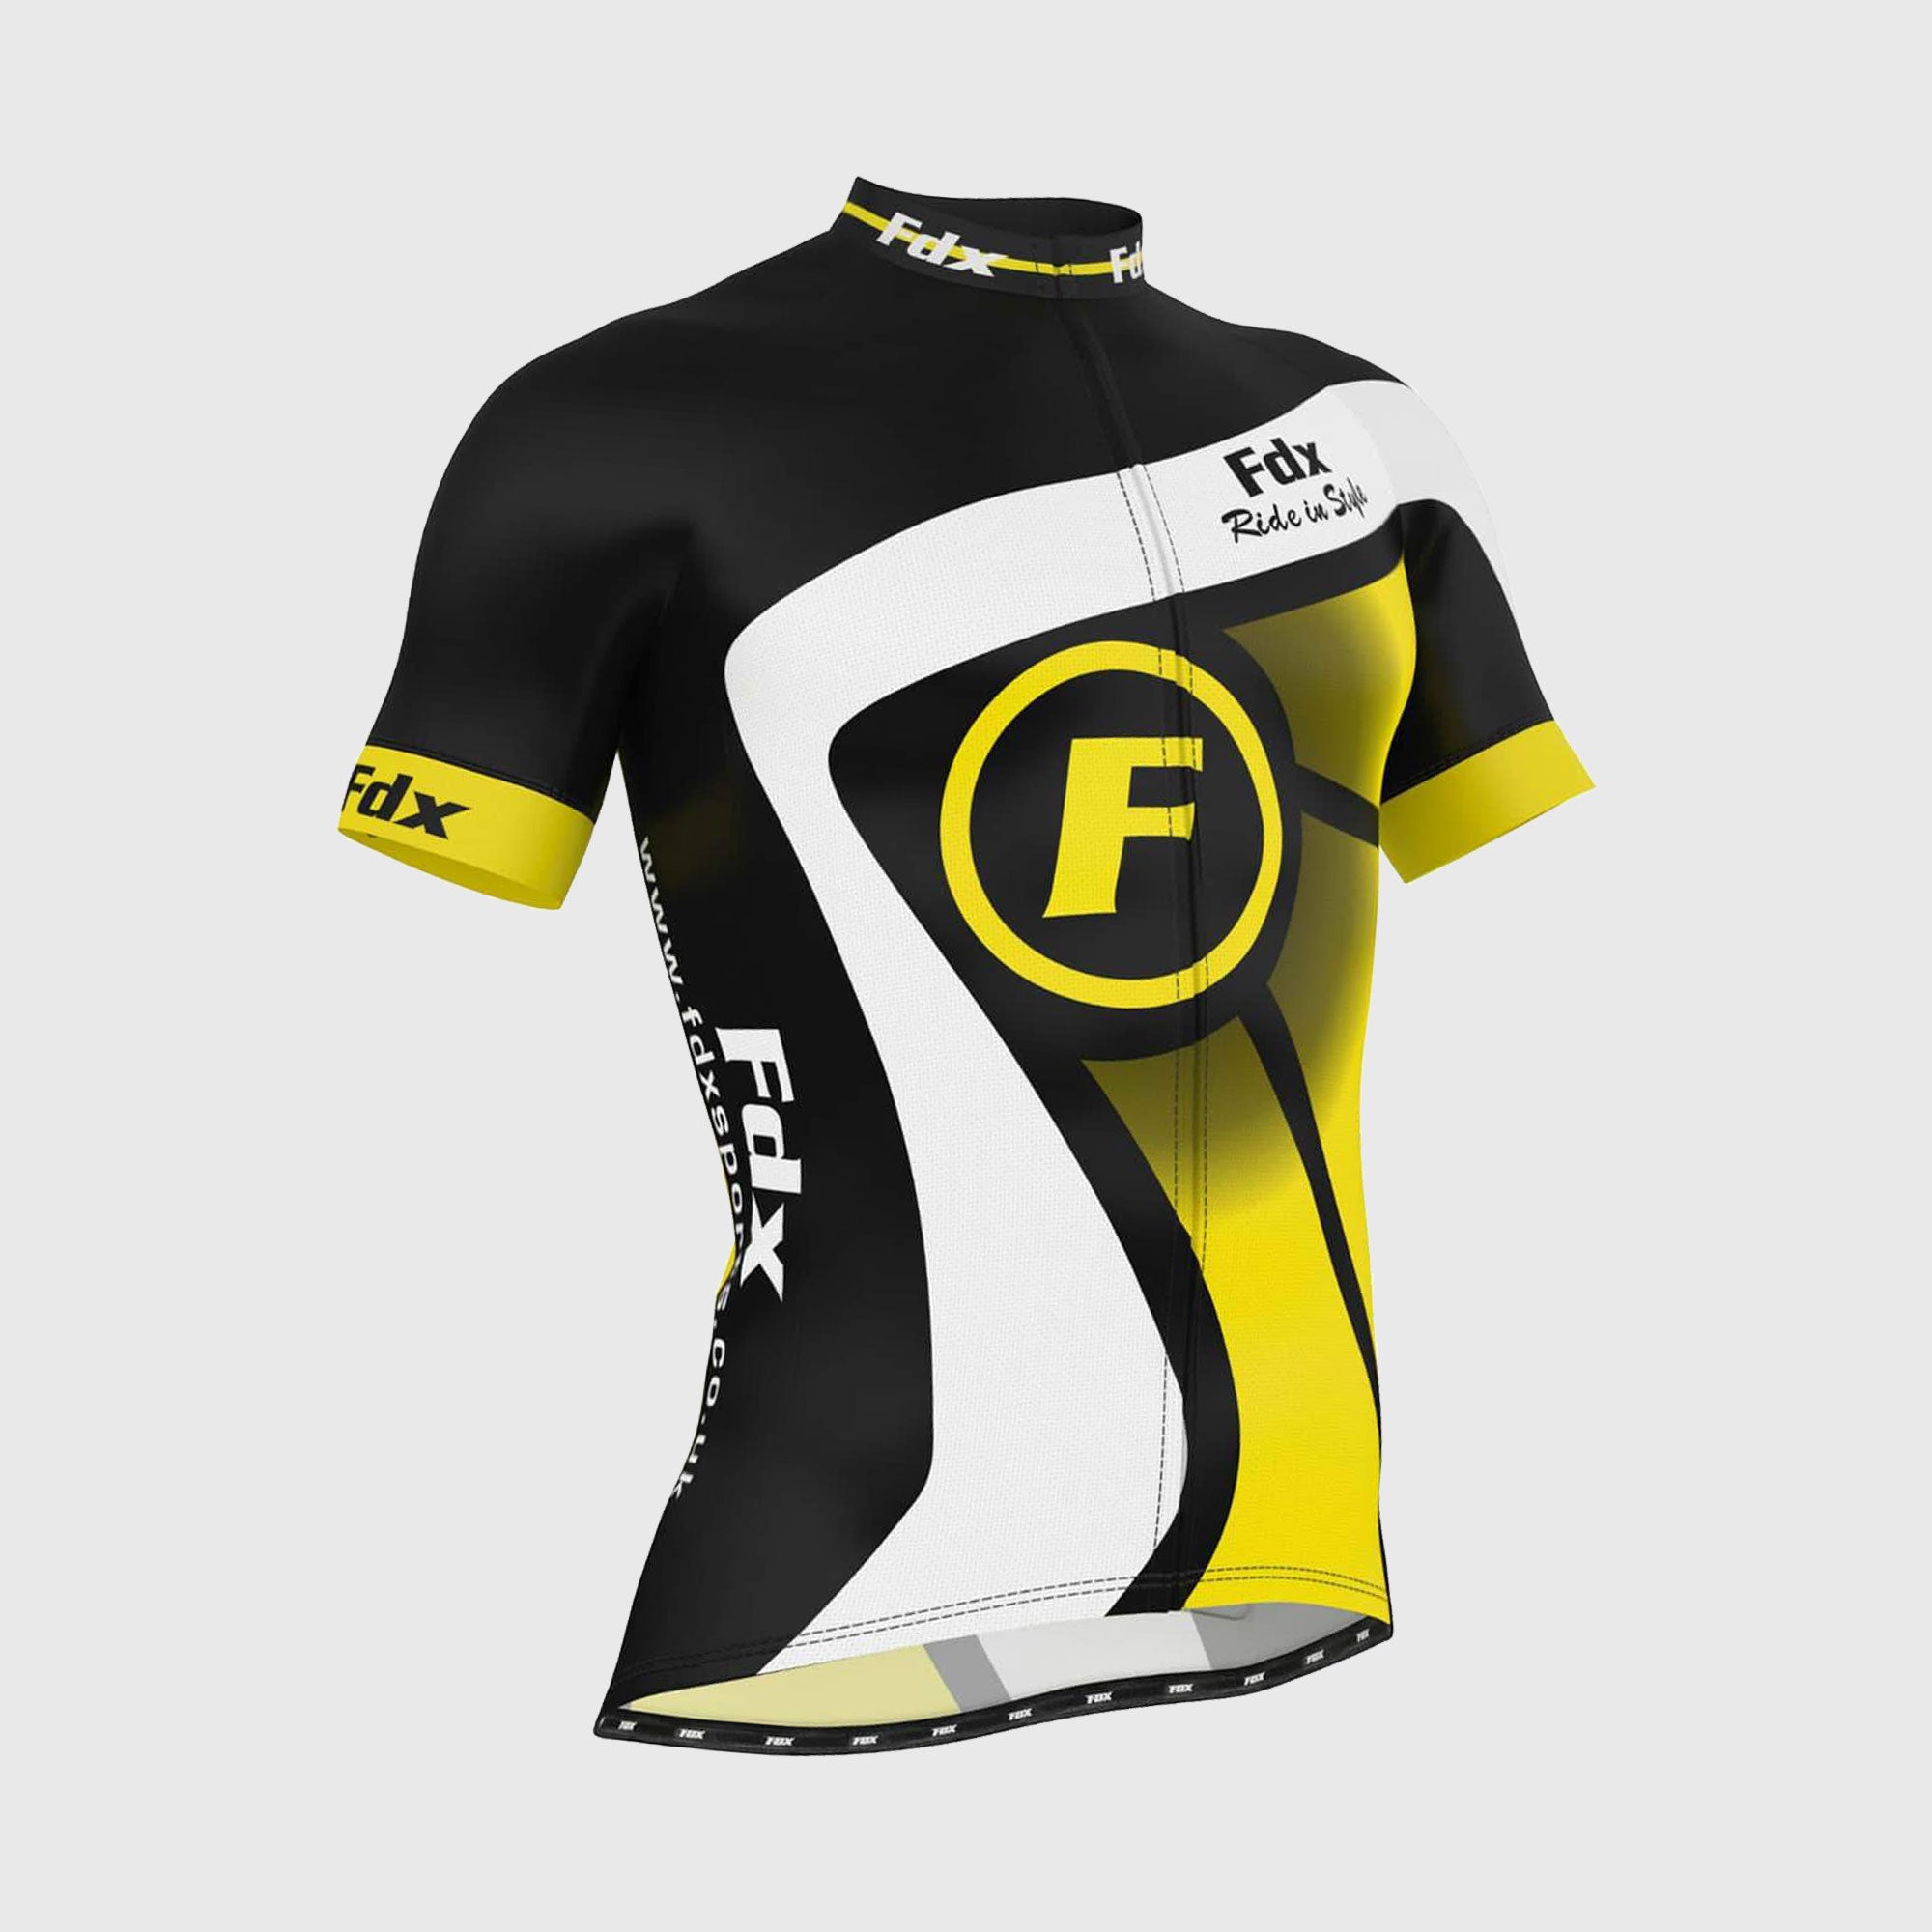 Fdx Mens Black & Yellow Short Sleeve Cycling Jersey for Summer Best Road Bike Wear Top Light Weight, Full Zipper, Pockets & Hi-viz Reflectors - Signature